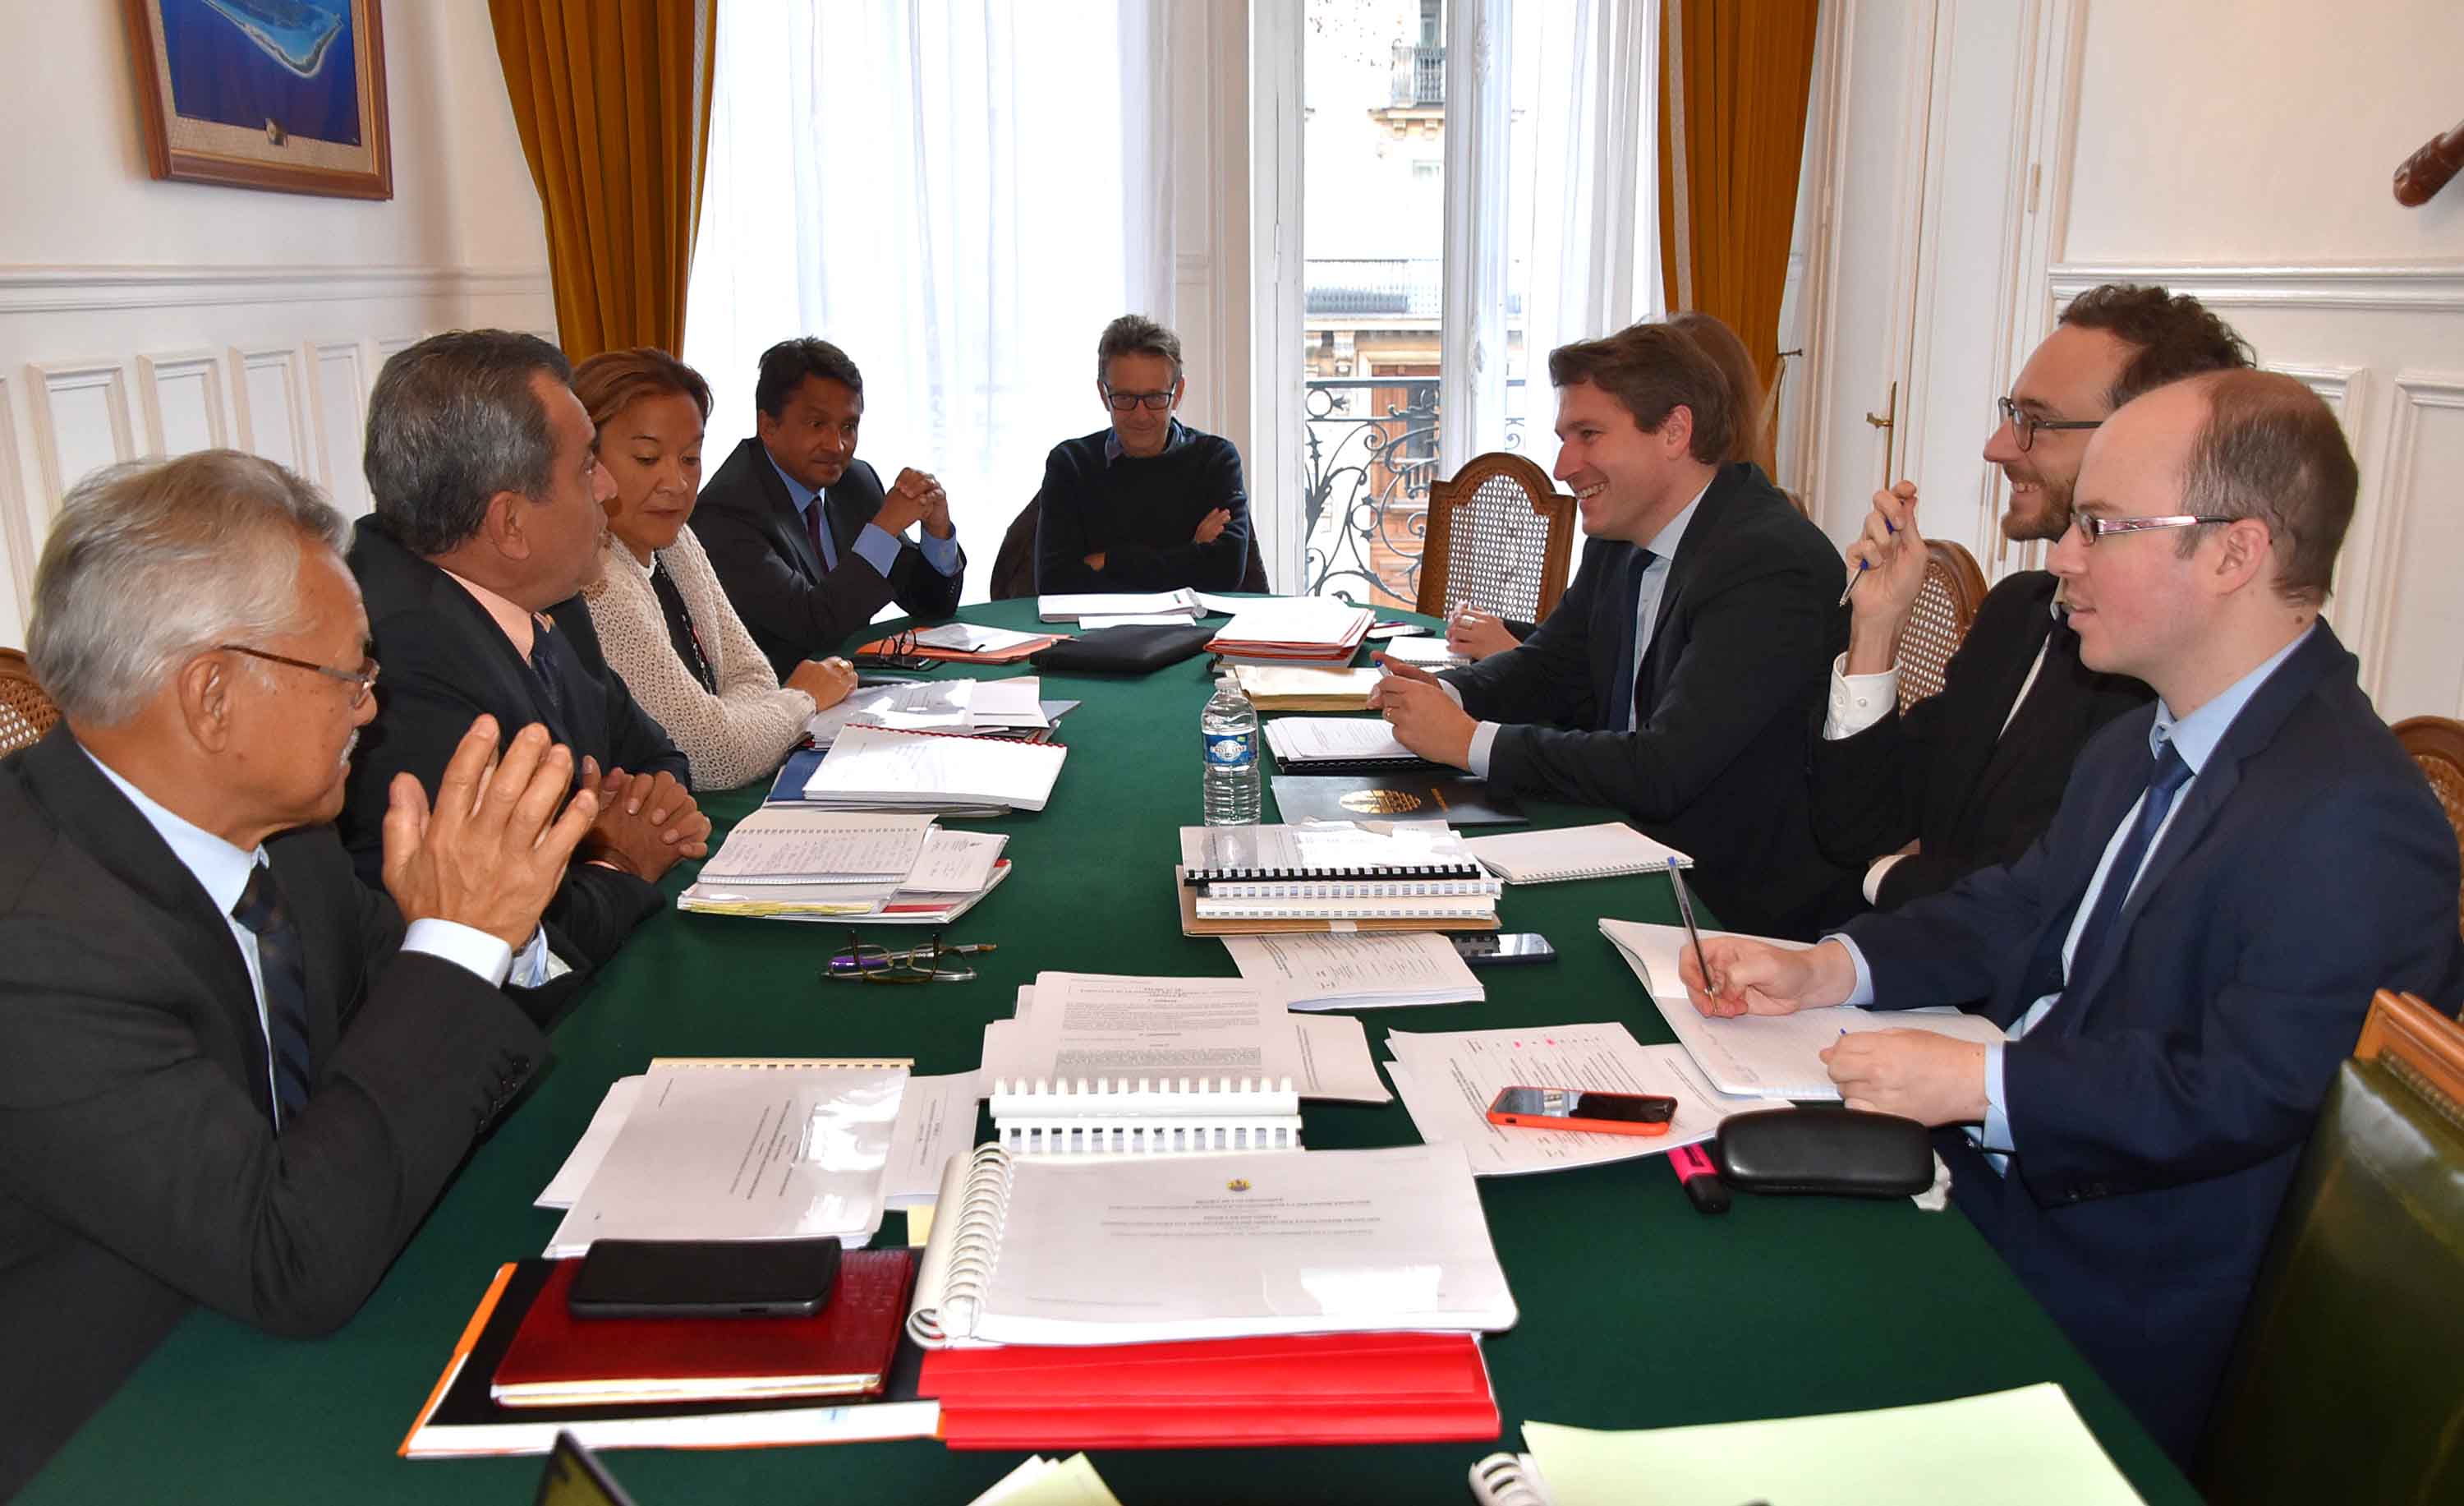 Le 21 janvier, lors de l'entretien entre le président Edouard Fritch et Mathieu Darnaud, sénateur de l’Ardèche, rapporteur du projet de loi organique modifiant le statut de la Polynésie française et du projet de loi.